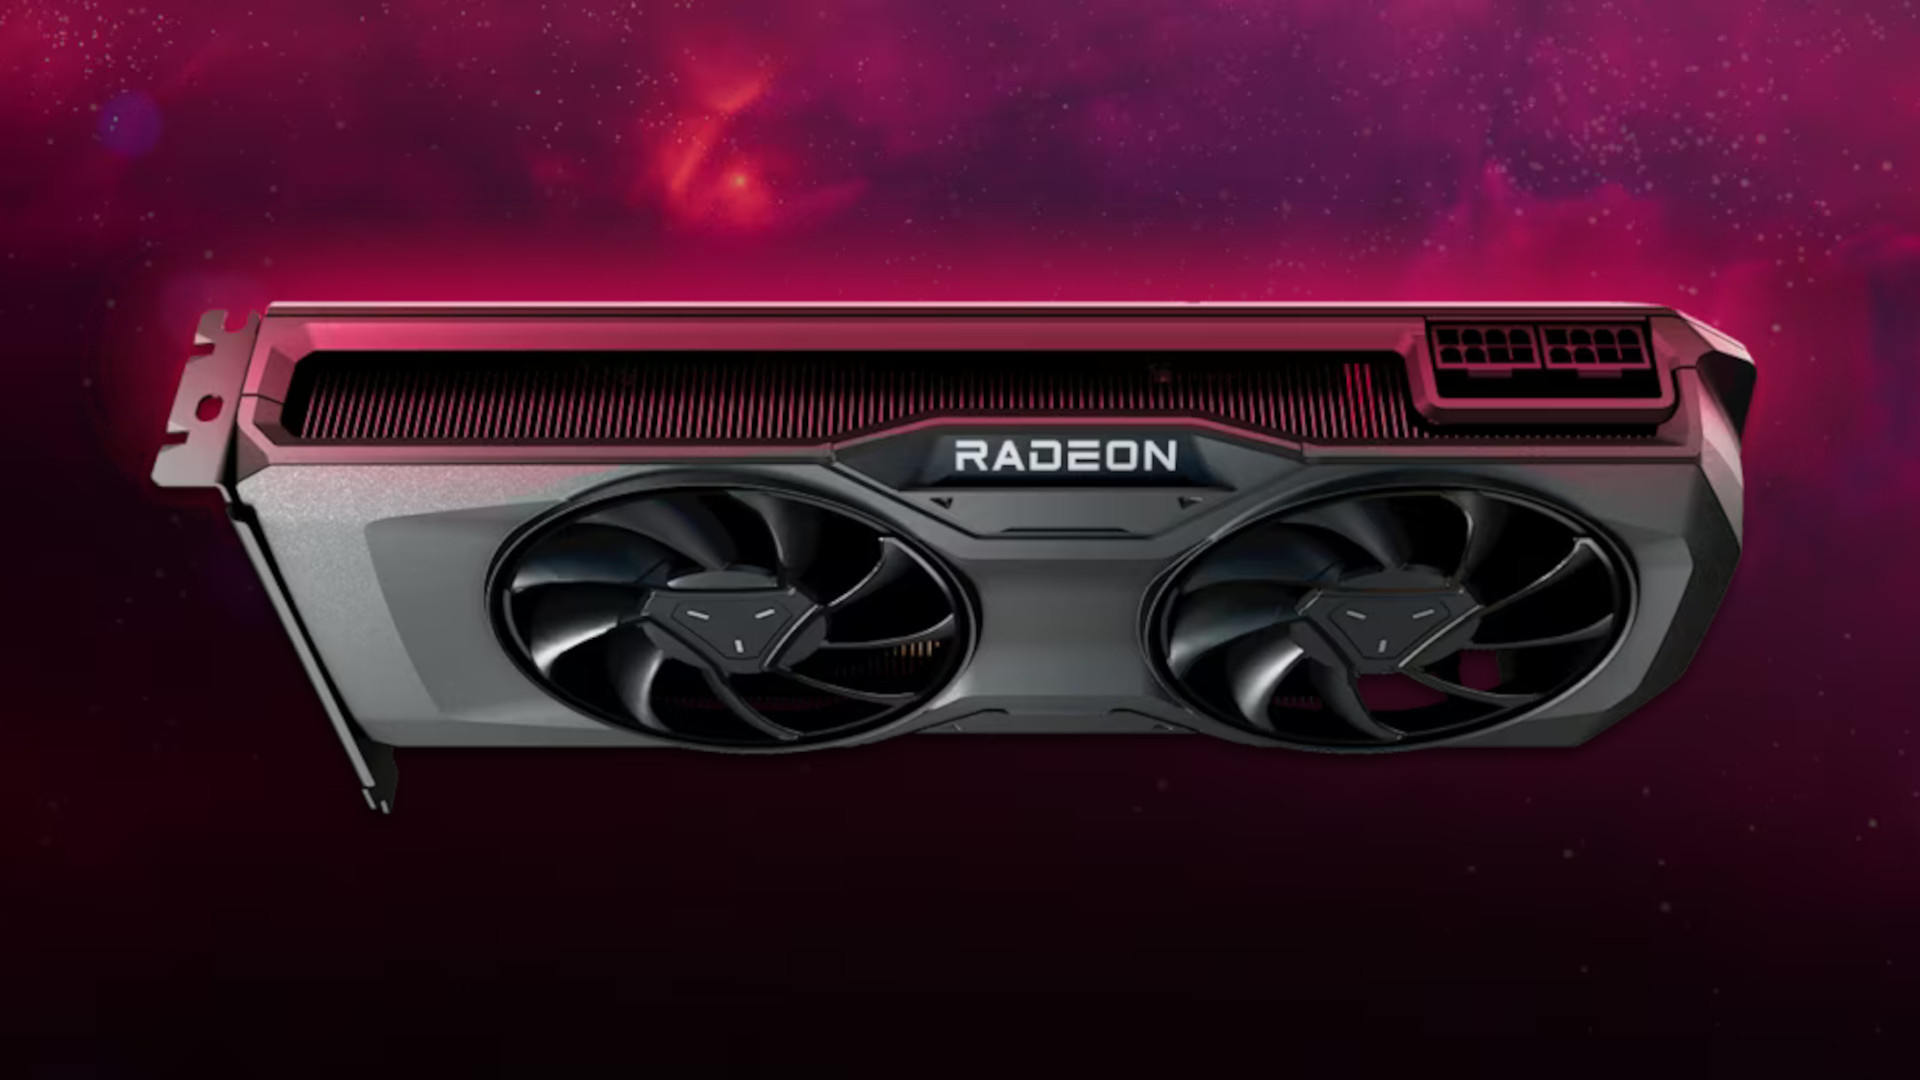 AMD RADEON RX 7700 XT Specifiche: una scheda di riferimento per la serie AMD Radeon RX 7000 galleggia contro una nebulosa rosso scuro